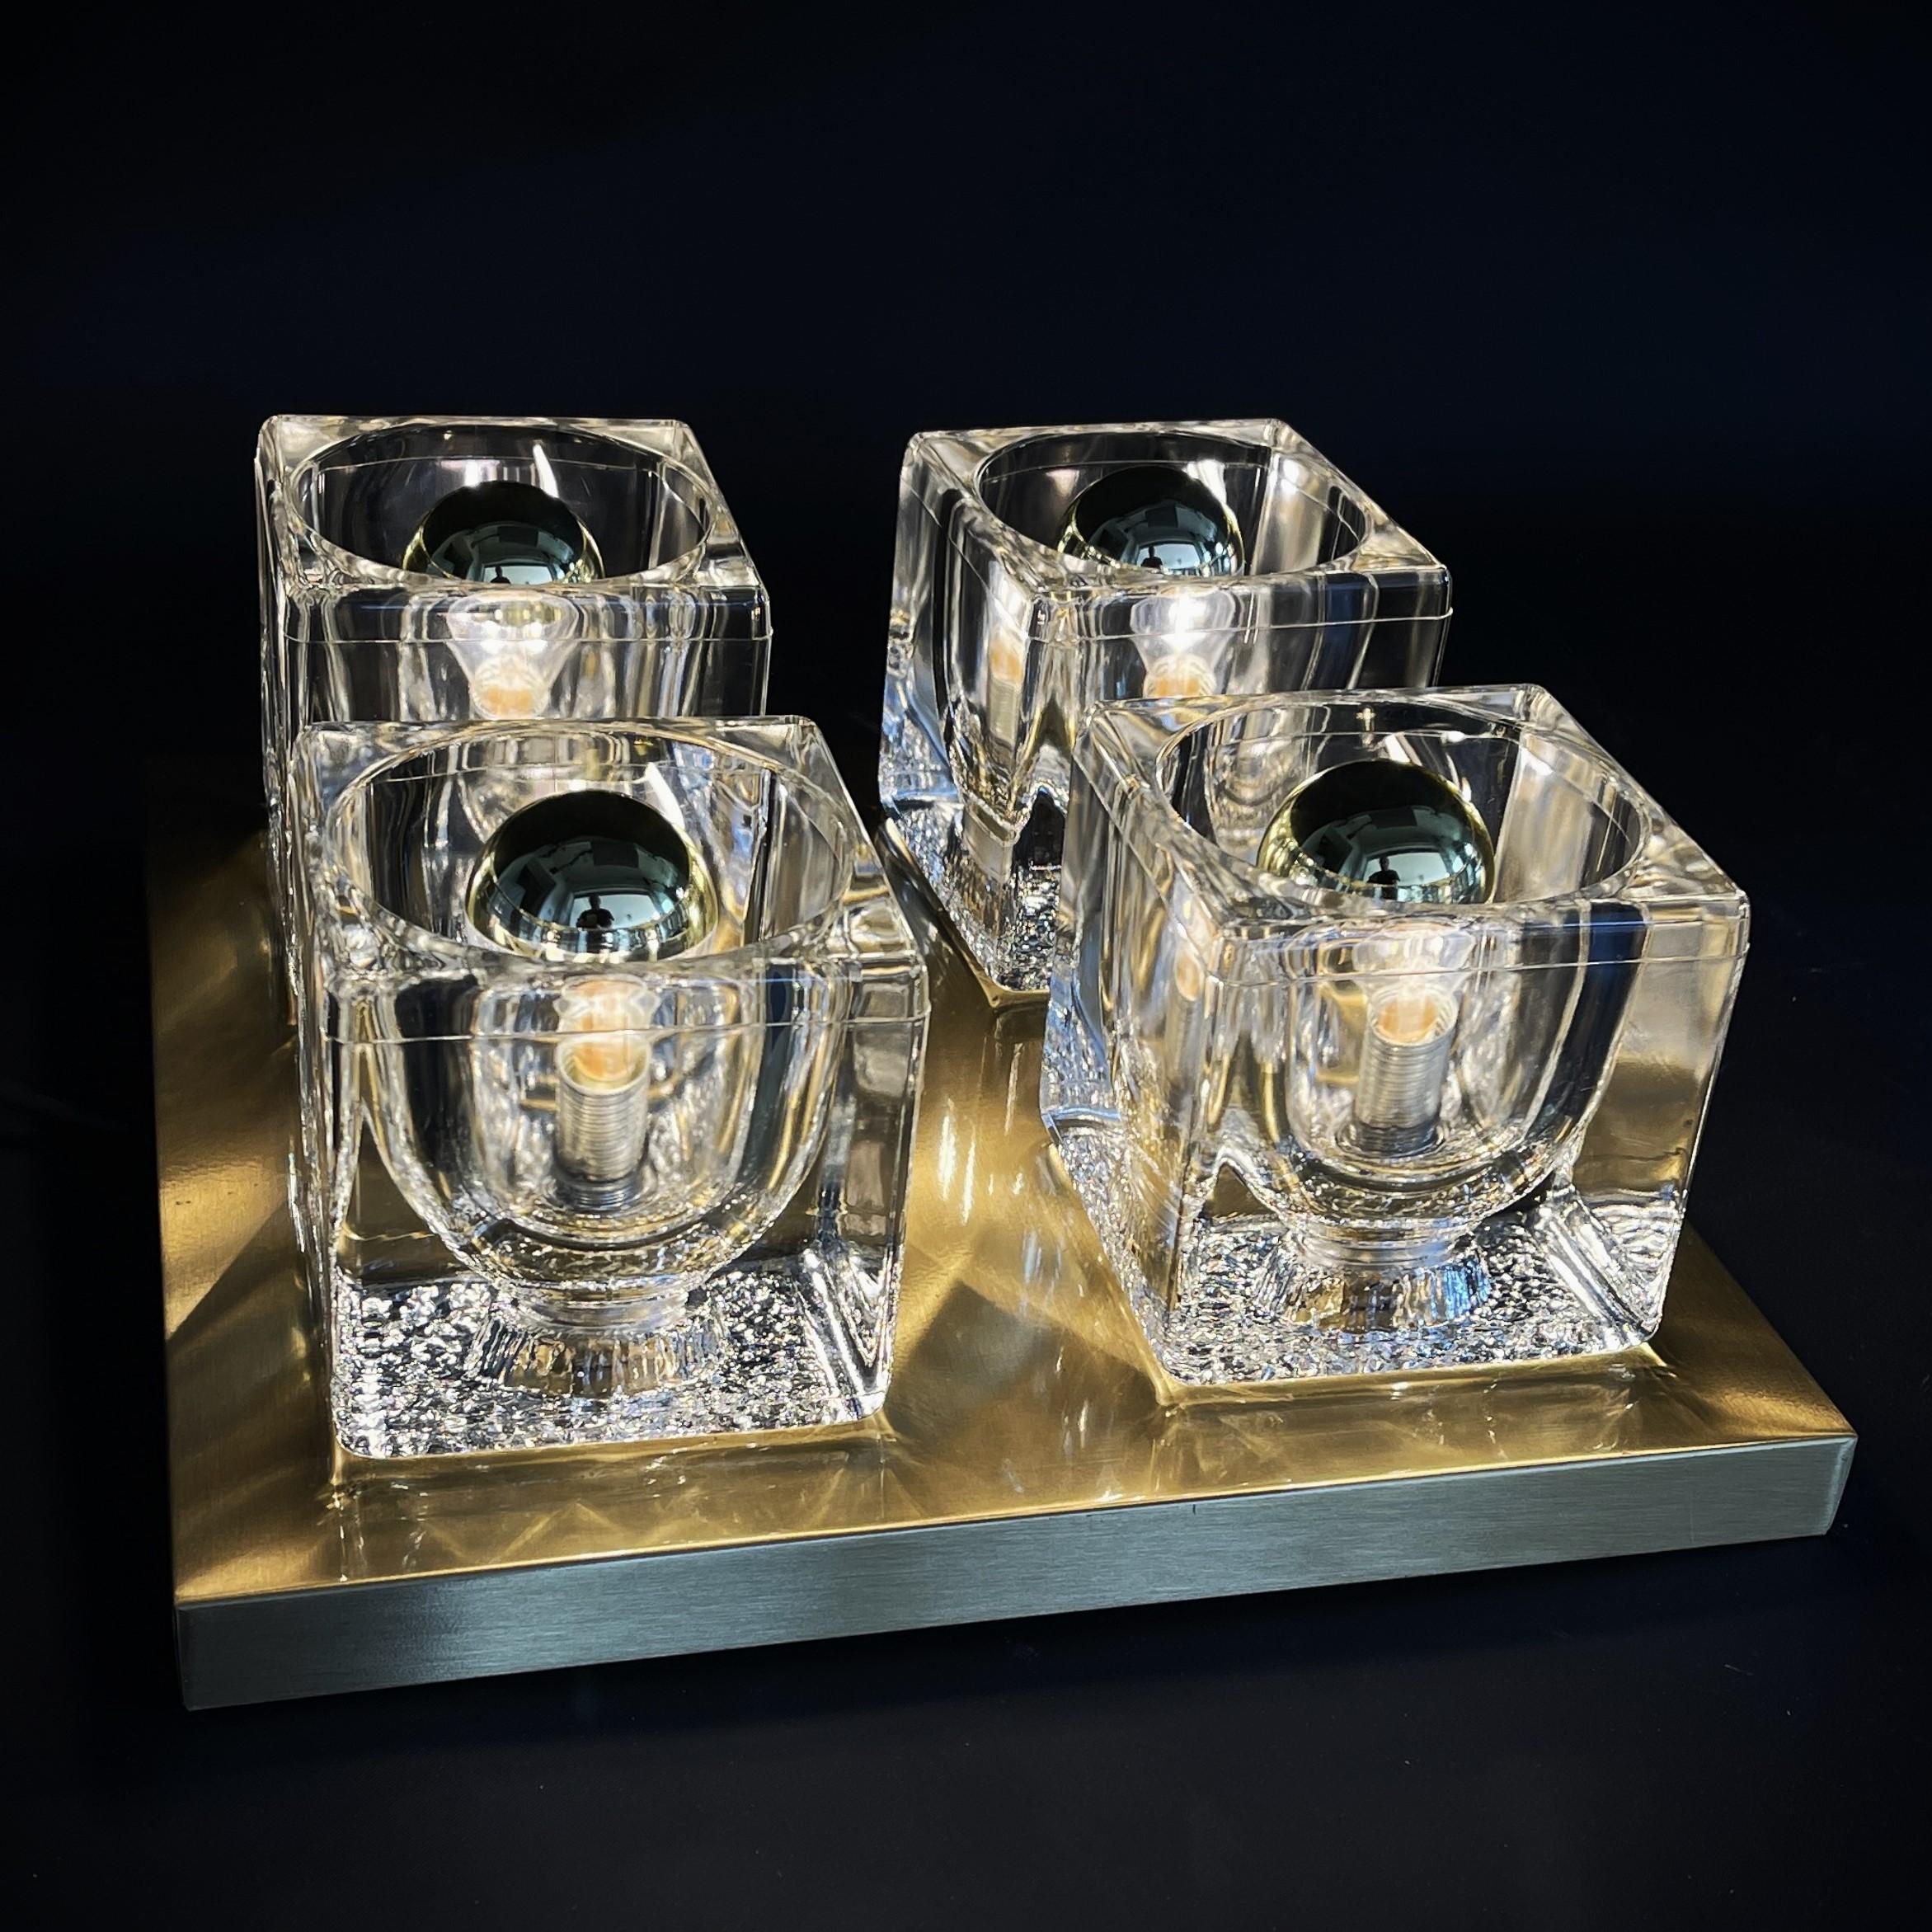 Applique ou plafonnier en verre Ice de Peill & Putzler, années 1970.

Cette lampe design est un véritable classique des années 70. La lampe de salon de Peill & Putzler est fabriquée en verre de haute qualité en forme de glaçon. Les cubes en verre